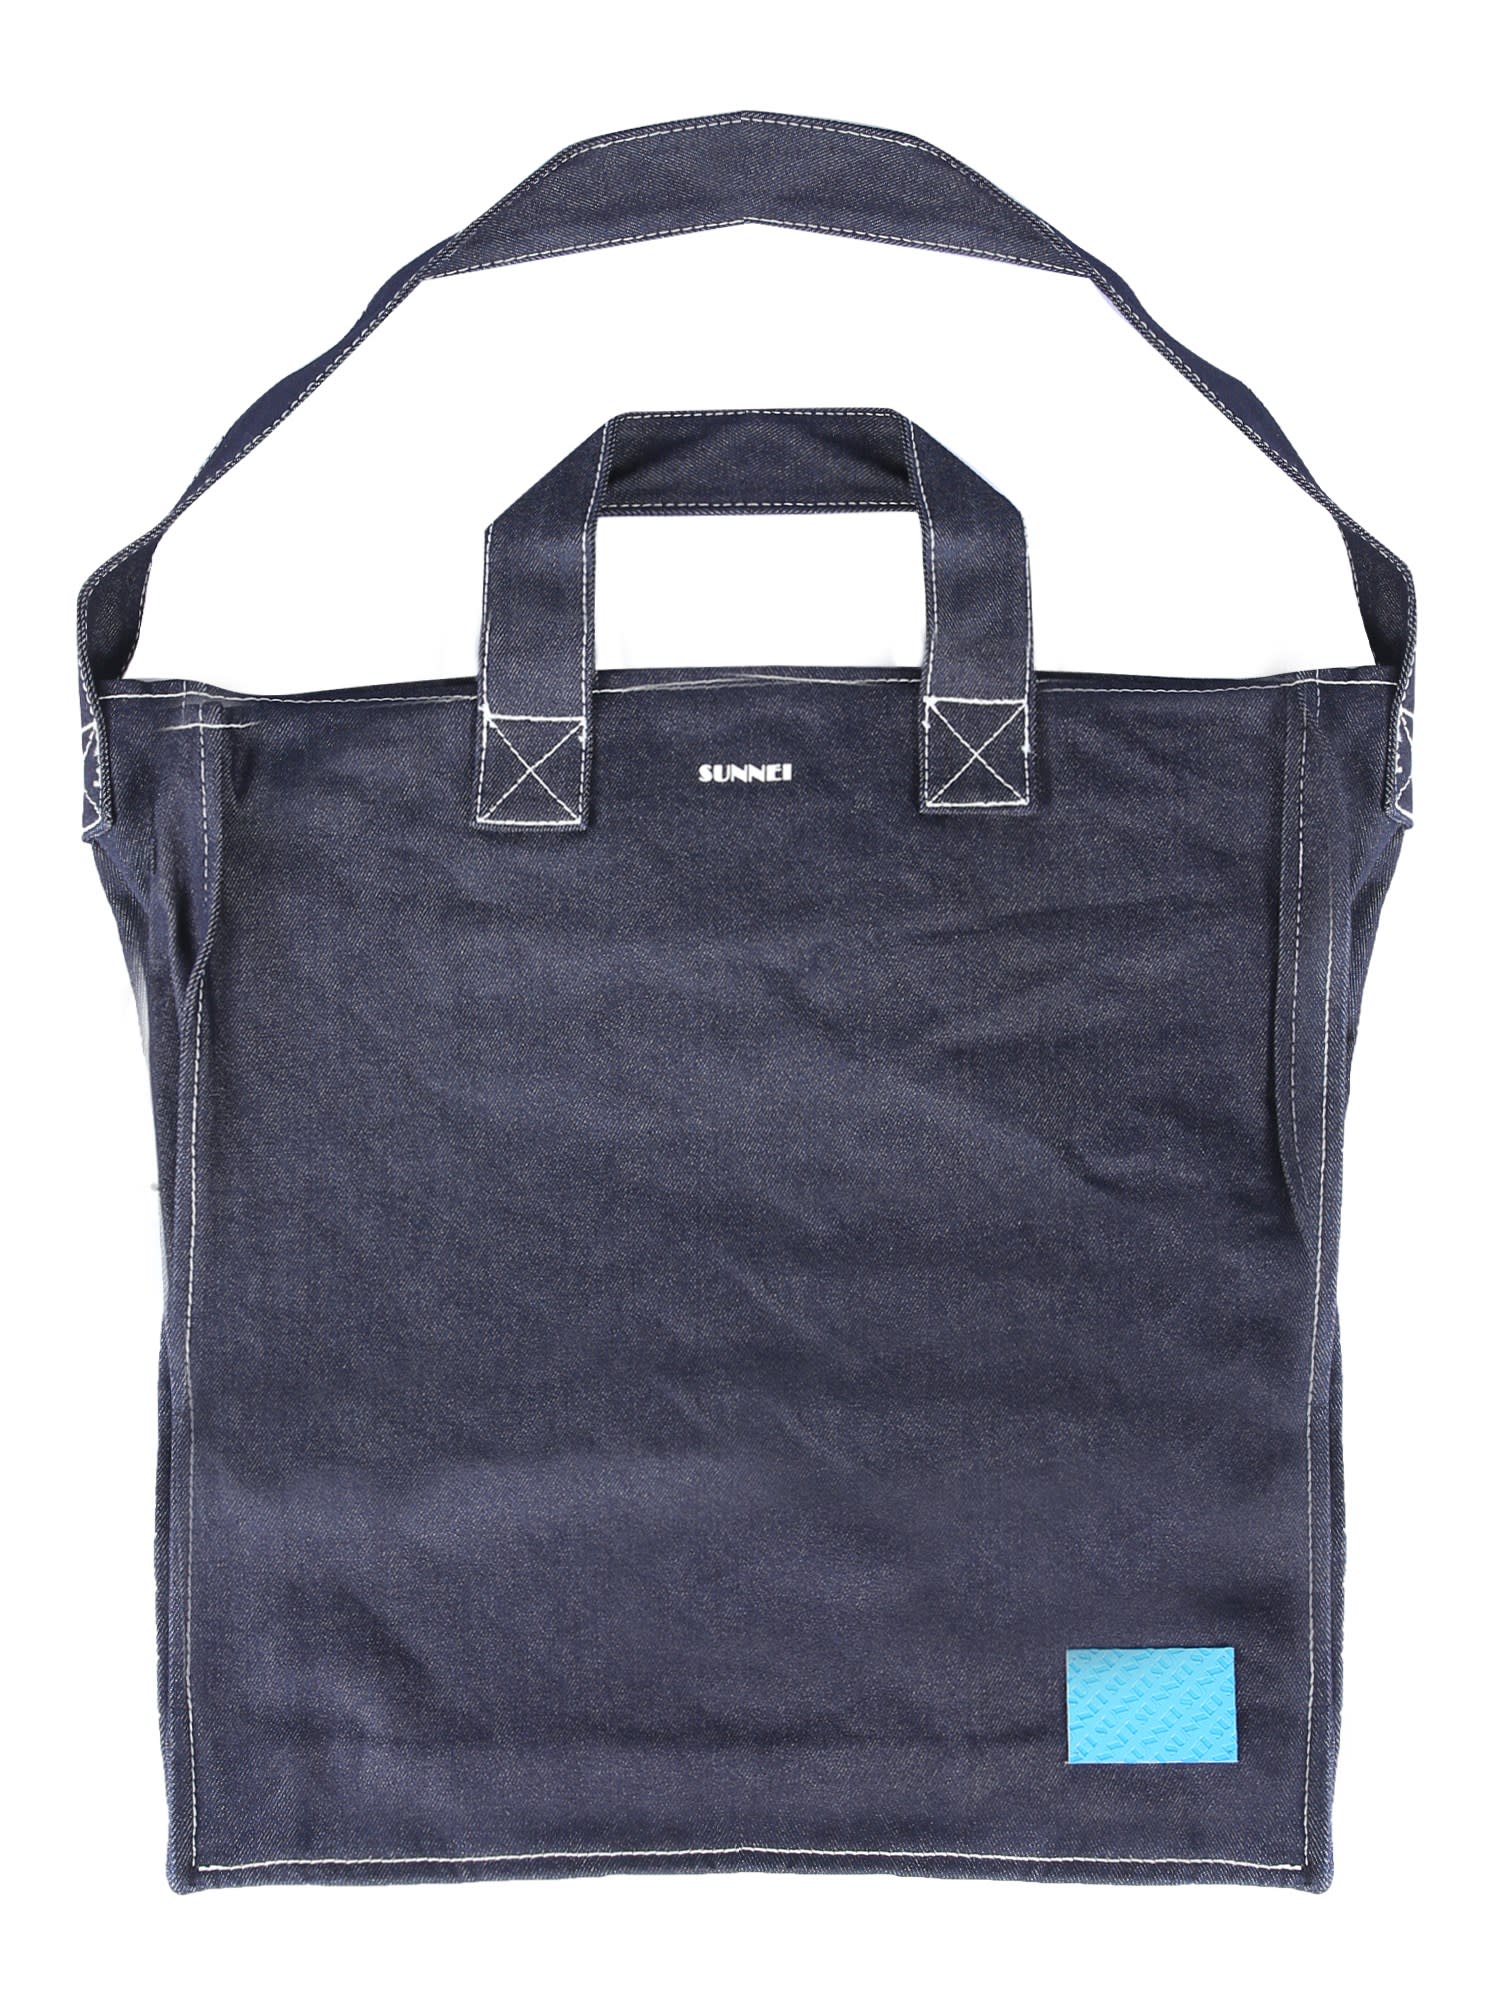 Sunnei Shopping Bag In Blue